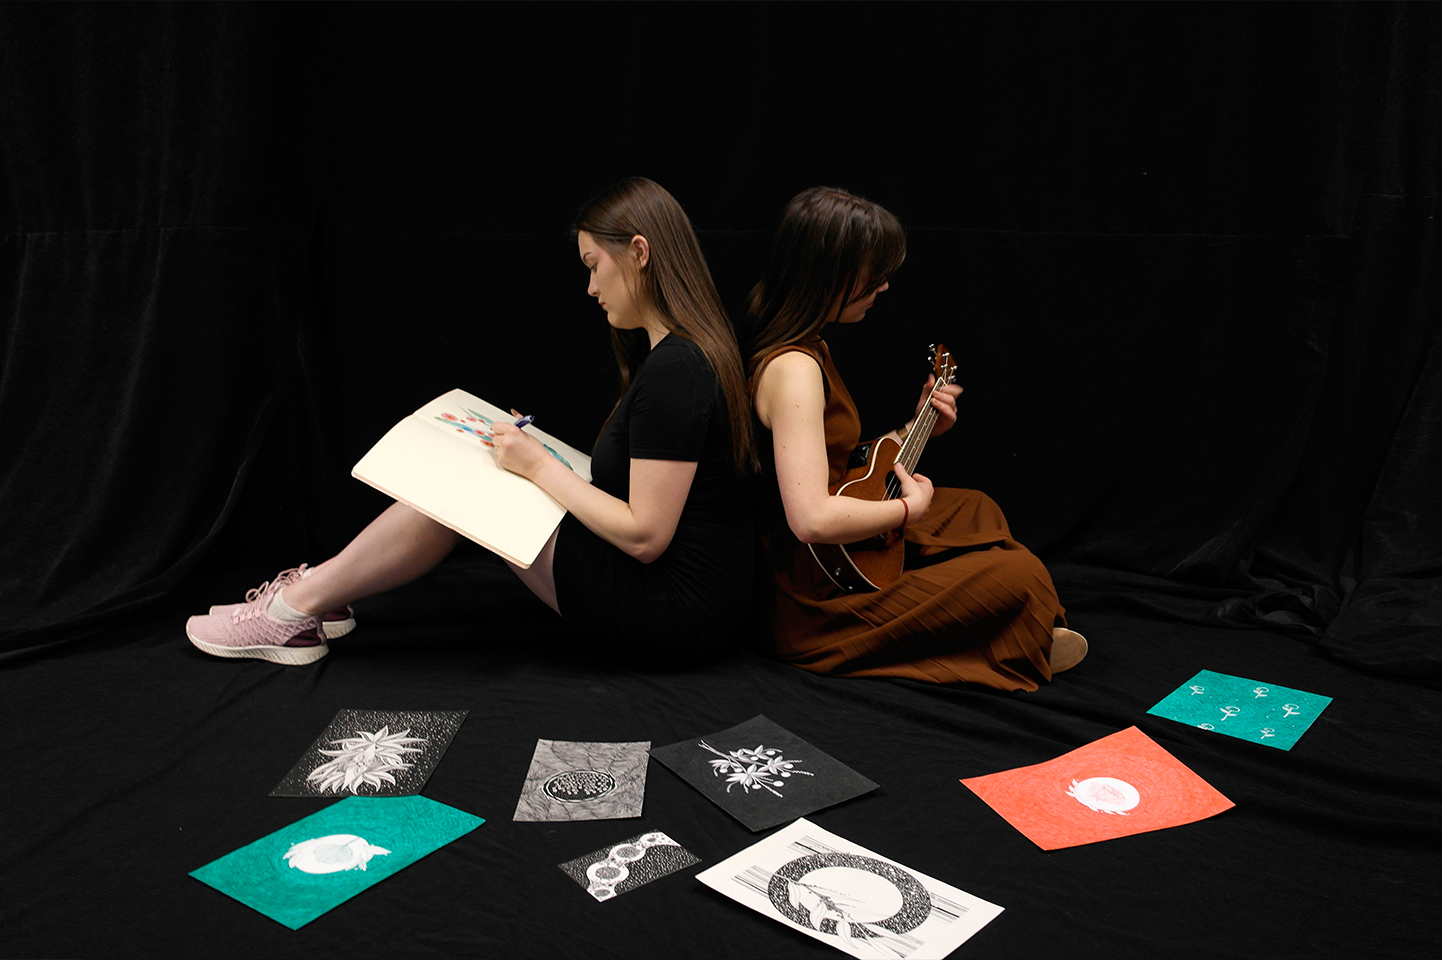 Dwie kobiety siedzą tyłem do siebie w czarnej przestrzeni. Jedna z nich ma szkicownik, w którym rysuje trzymając pisak lewą ręką, druga gran na ukulele. Przed nimi leżą ułożone w półokrąg rysunki.